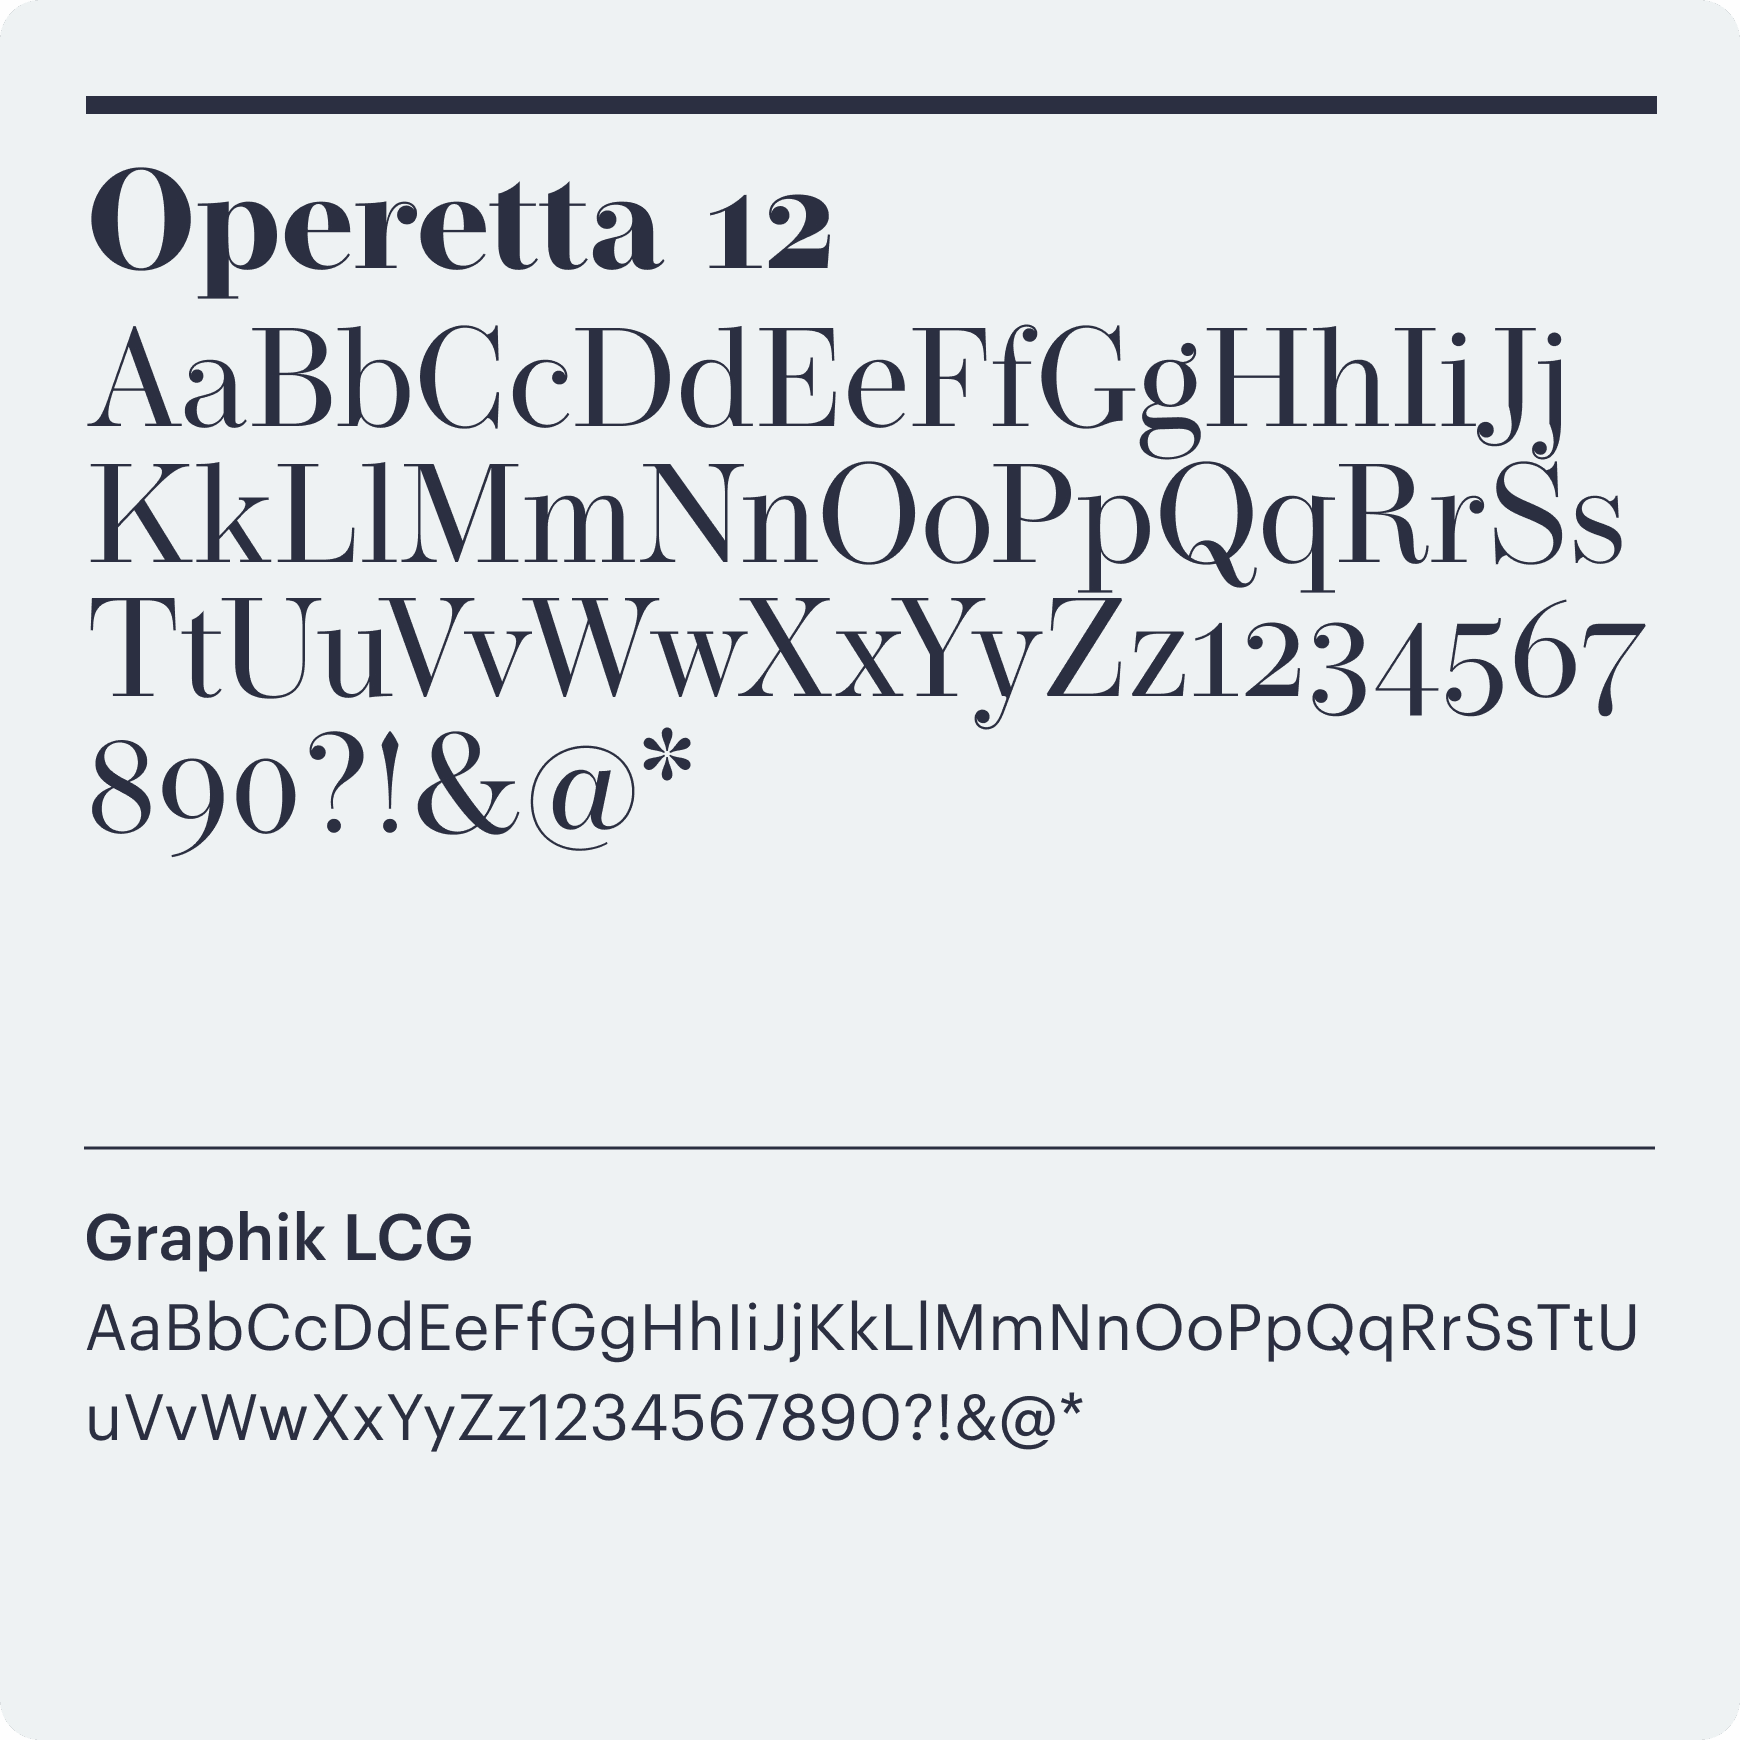 Mashroom font, Operetta 12